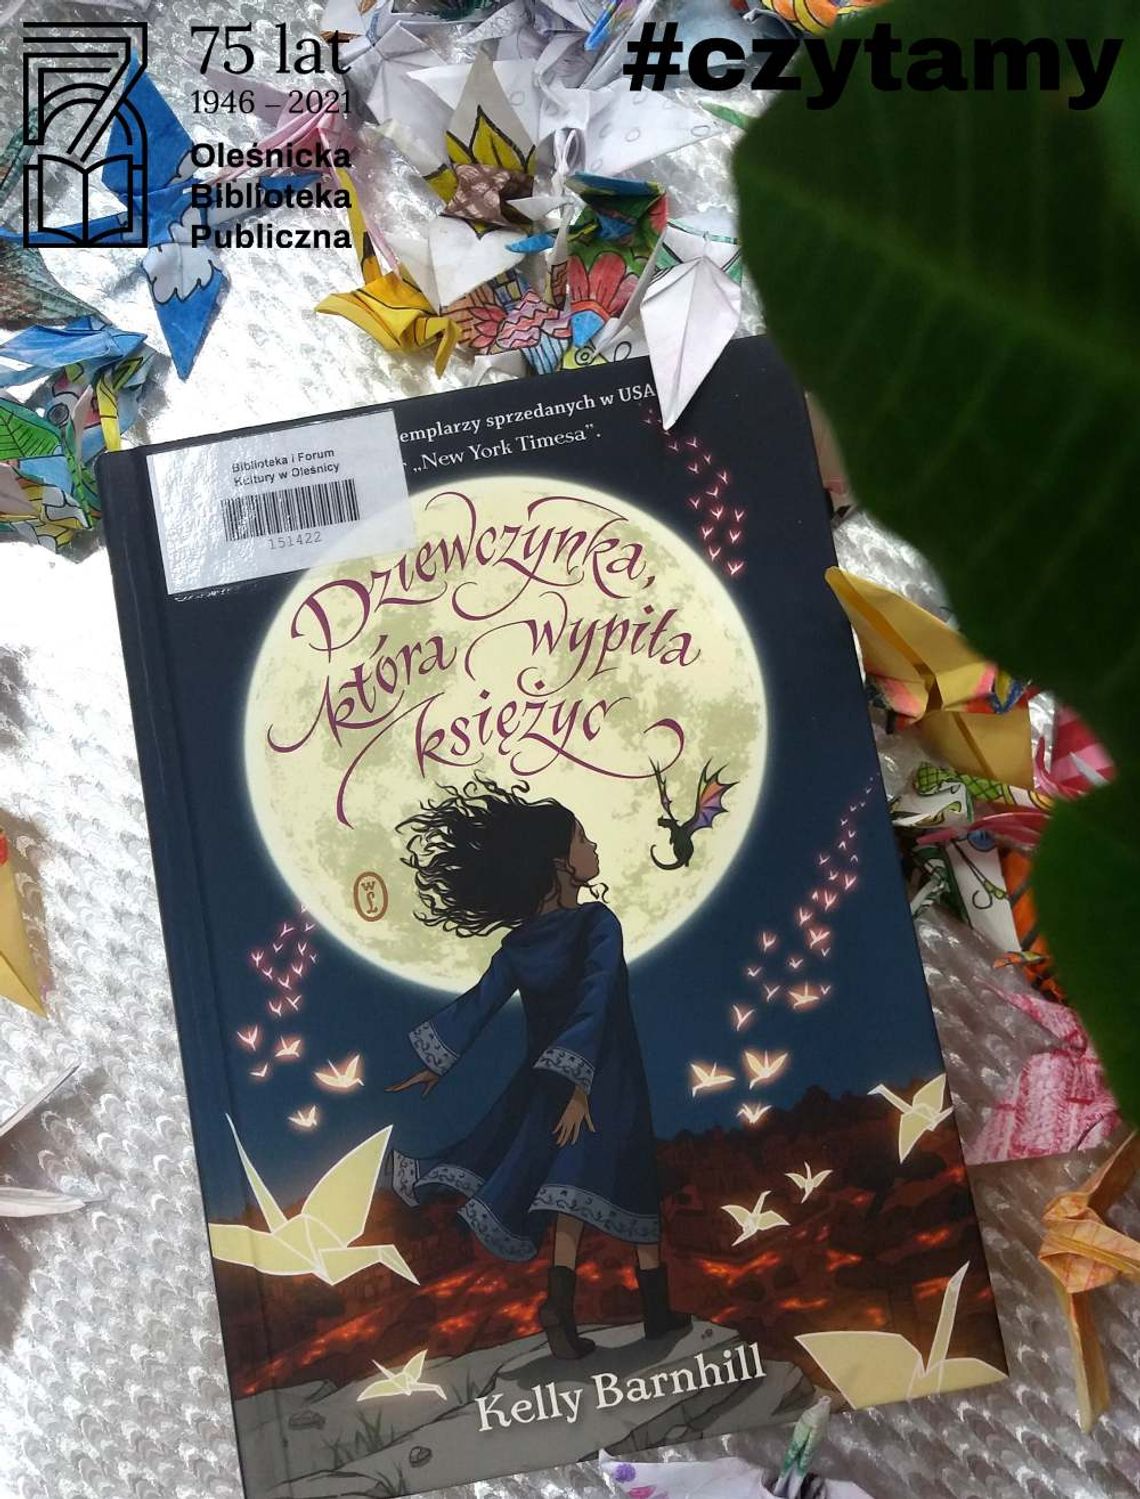 Oleśnicka Biblioteka Publiczna poleca książkę na weekend: „Dziewczynka, która wypiła księżyc” 